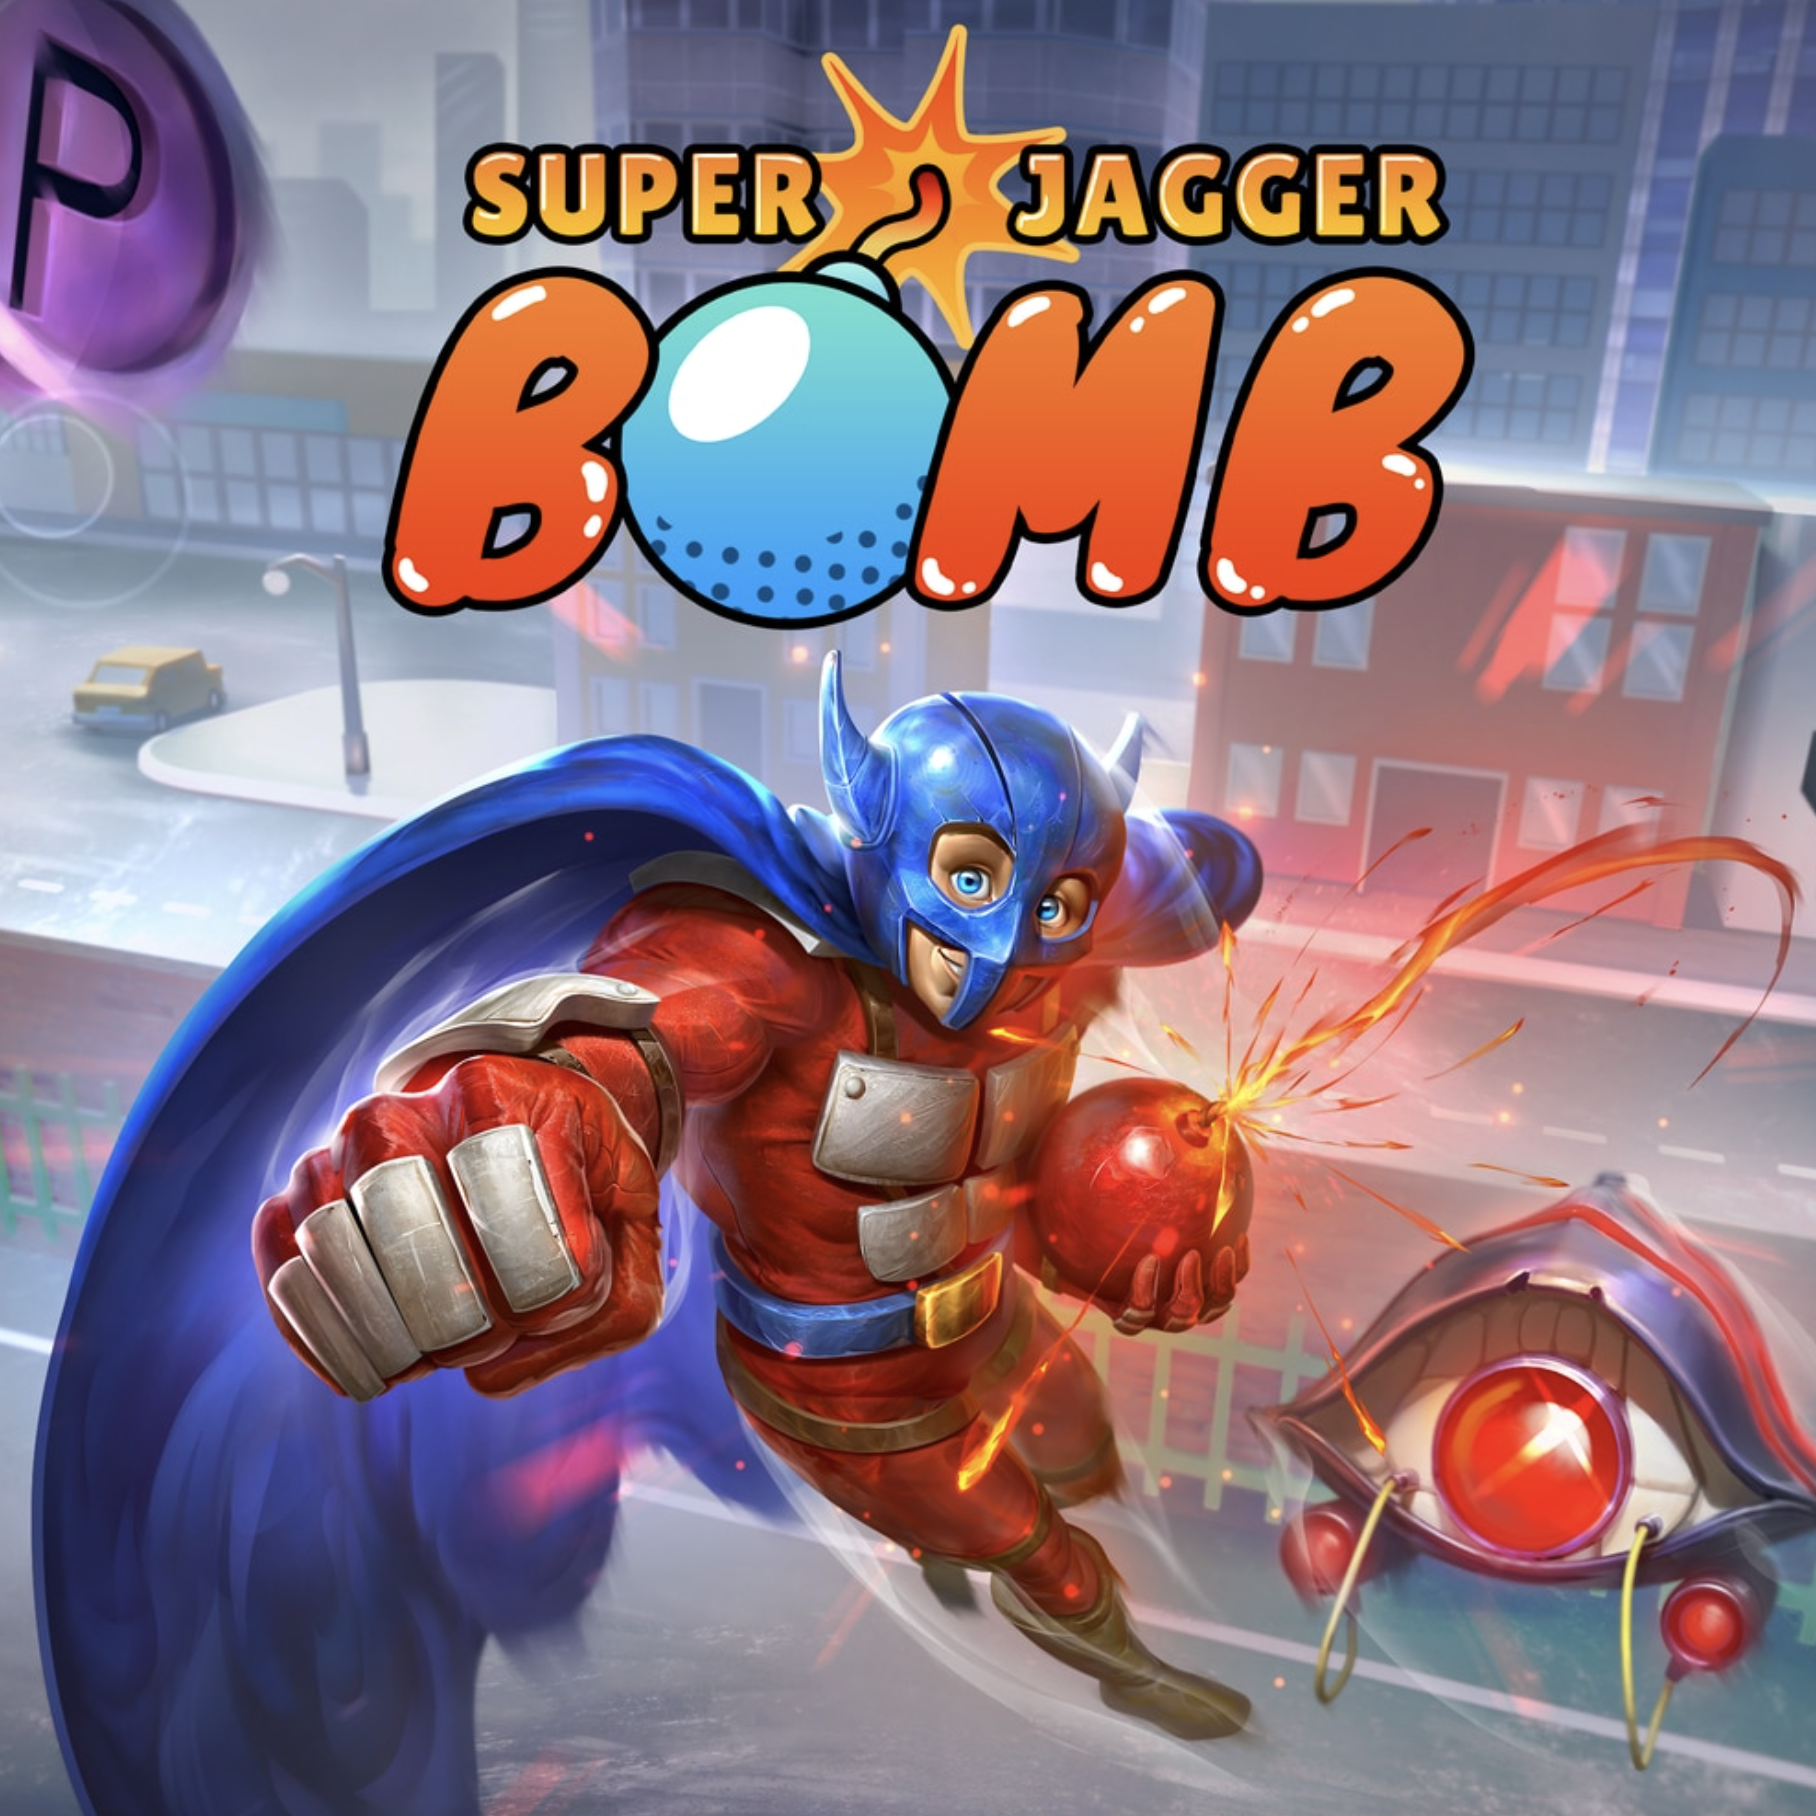 Review: Super Jagger Bomb